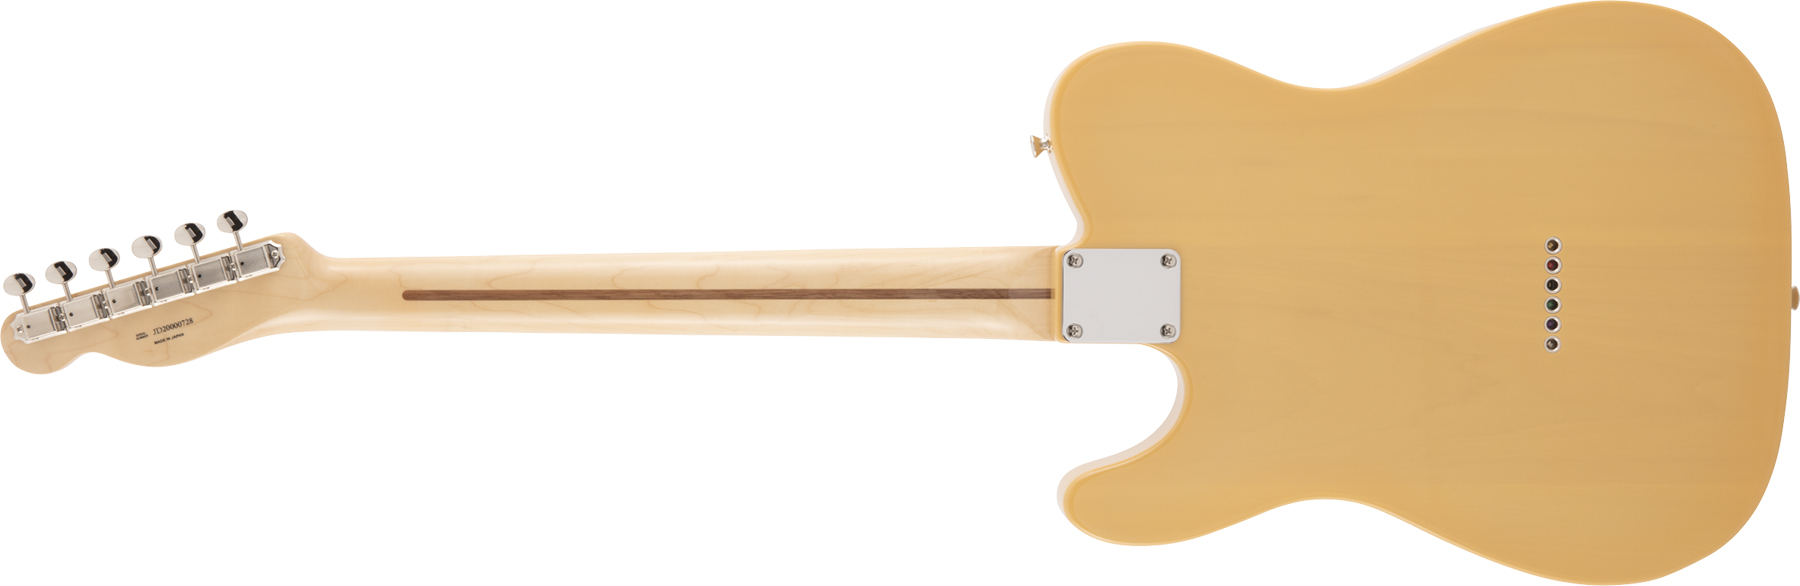 Fender Tele Traditional 50s Jap Mn - Butterscotch Blonde - Guitarra eléctrica con forma de tel - Variation 1